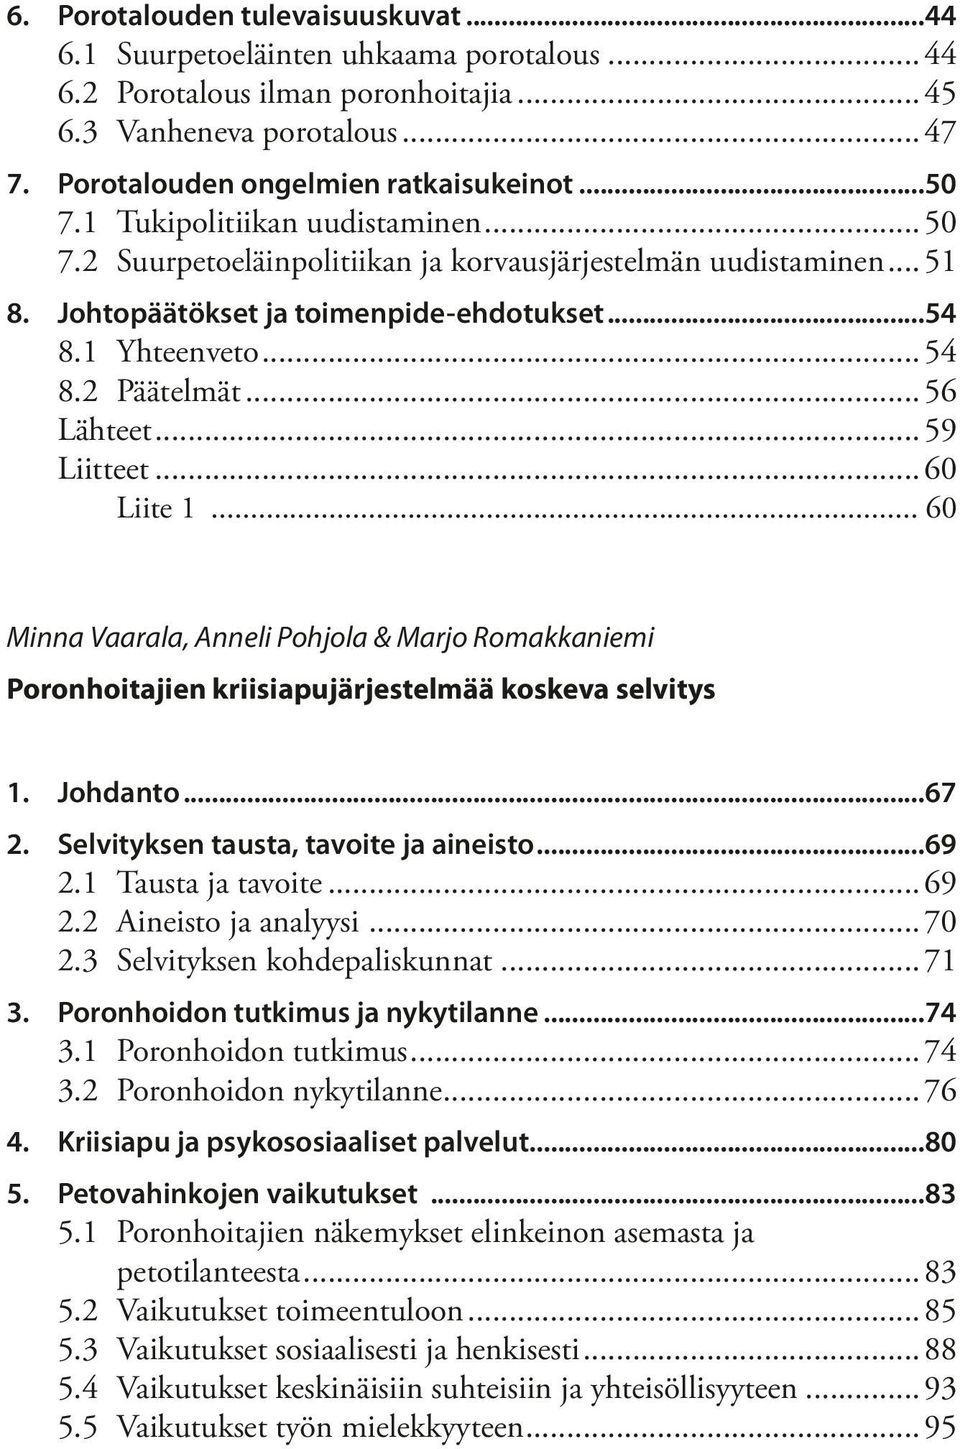 ..59 Liitteet...60 Liite 1... 60 Minna Vaarala, Anneli Pohjola & Marjo Romakkaniemi Poronhoitajien kriisiapujärjestelmää koskeva selvitys 1. Johdanto...67 2. Selvityksen tausta, tavoite ja aineisto.